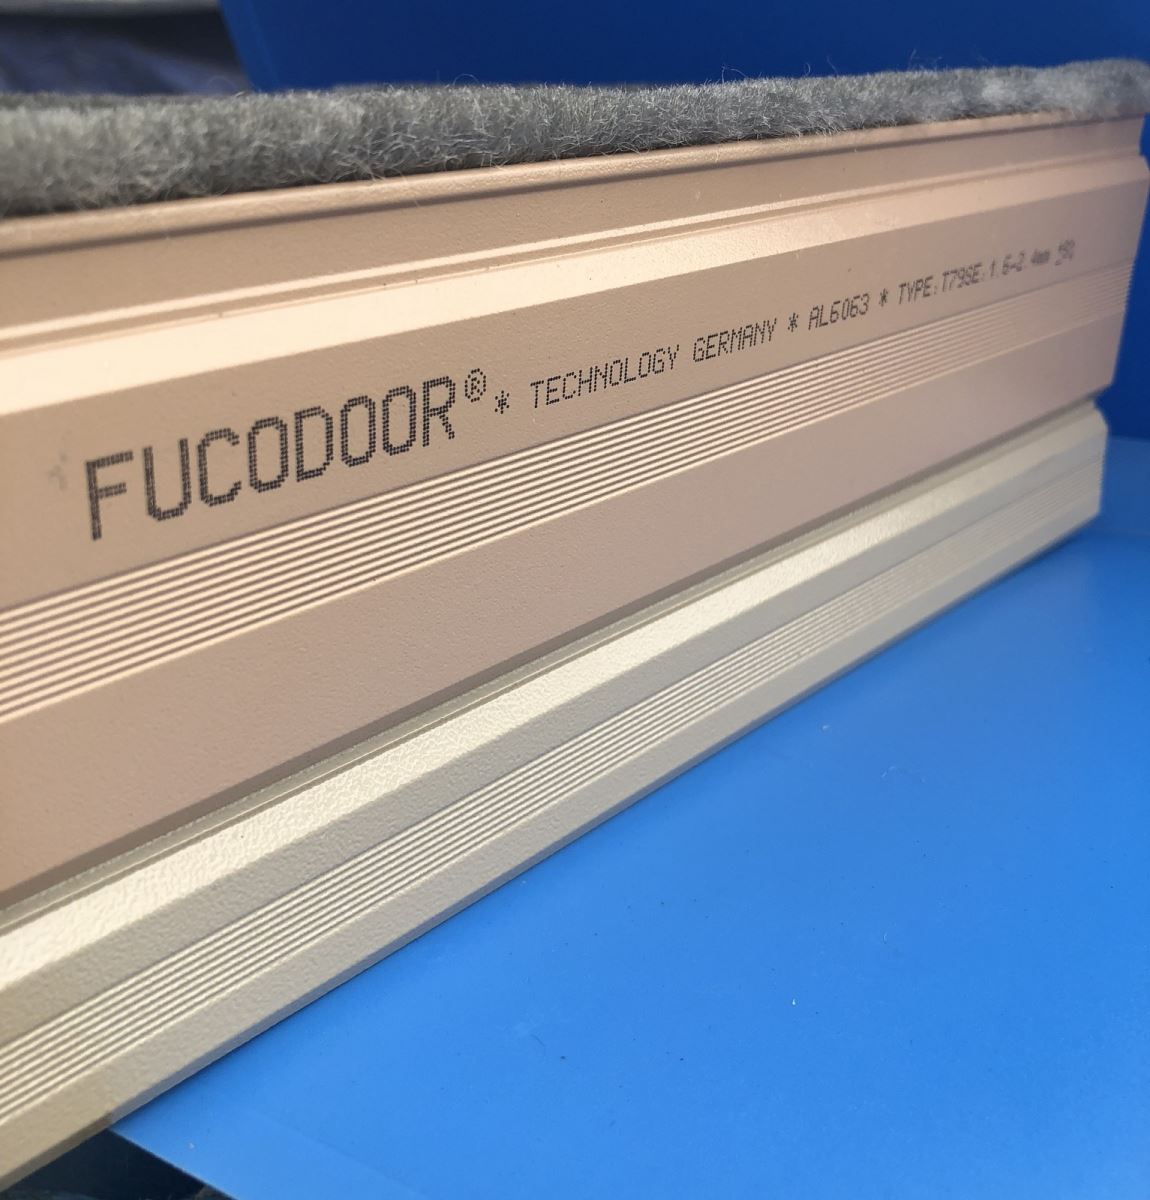 Cửa cuốn Đức Fucodoor T79SE